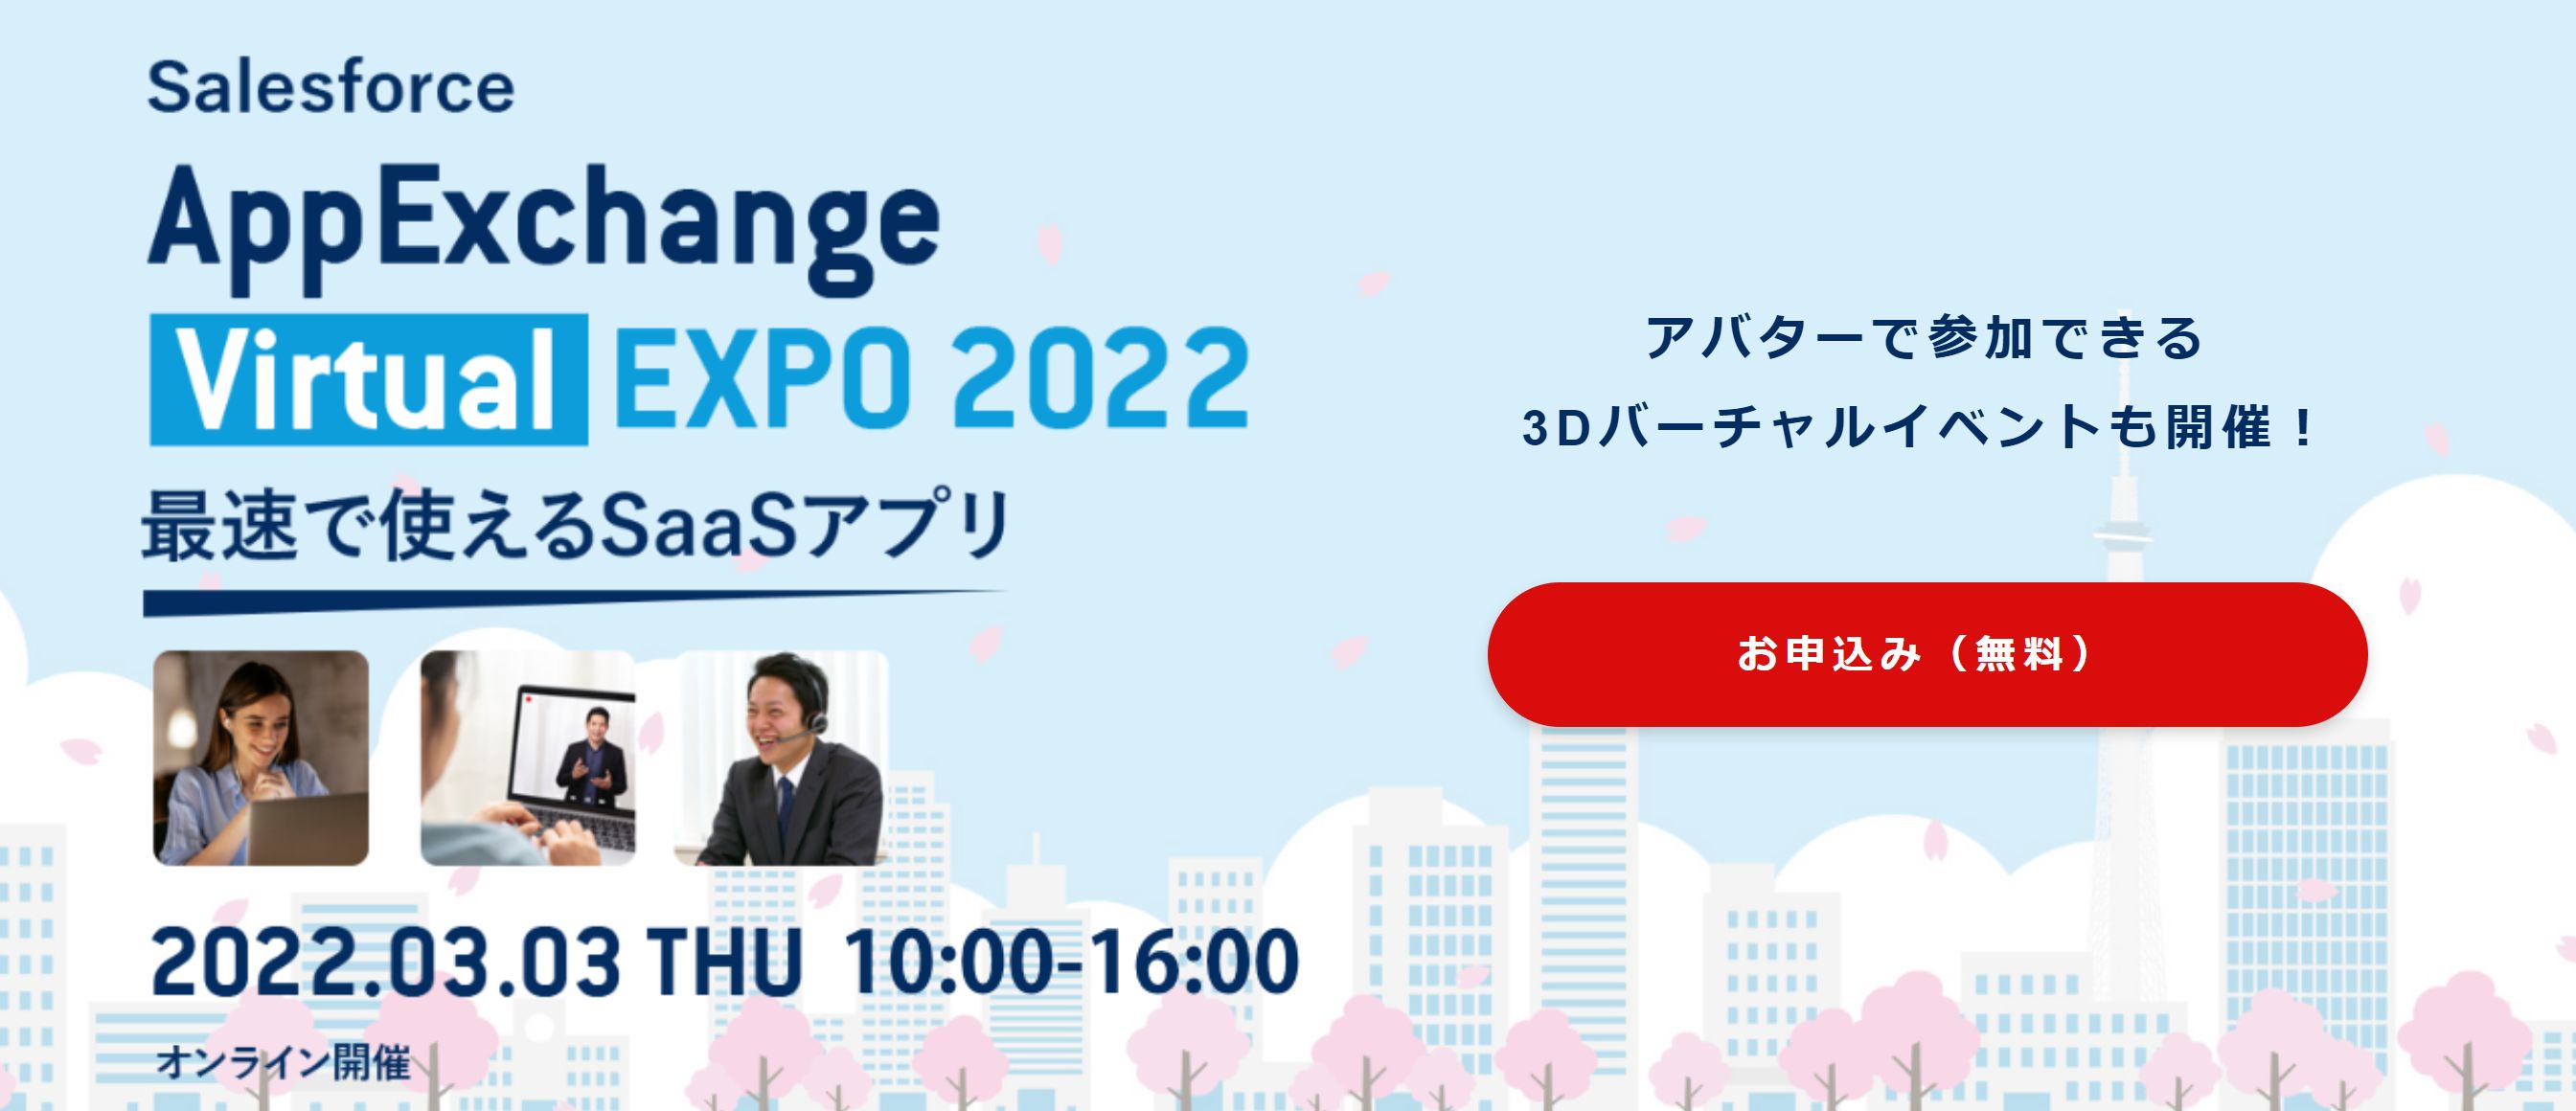 AppExchangeの専門展示会「AppExchange Virtual EXPO 2022」